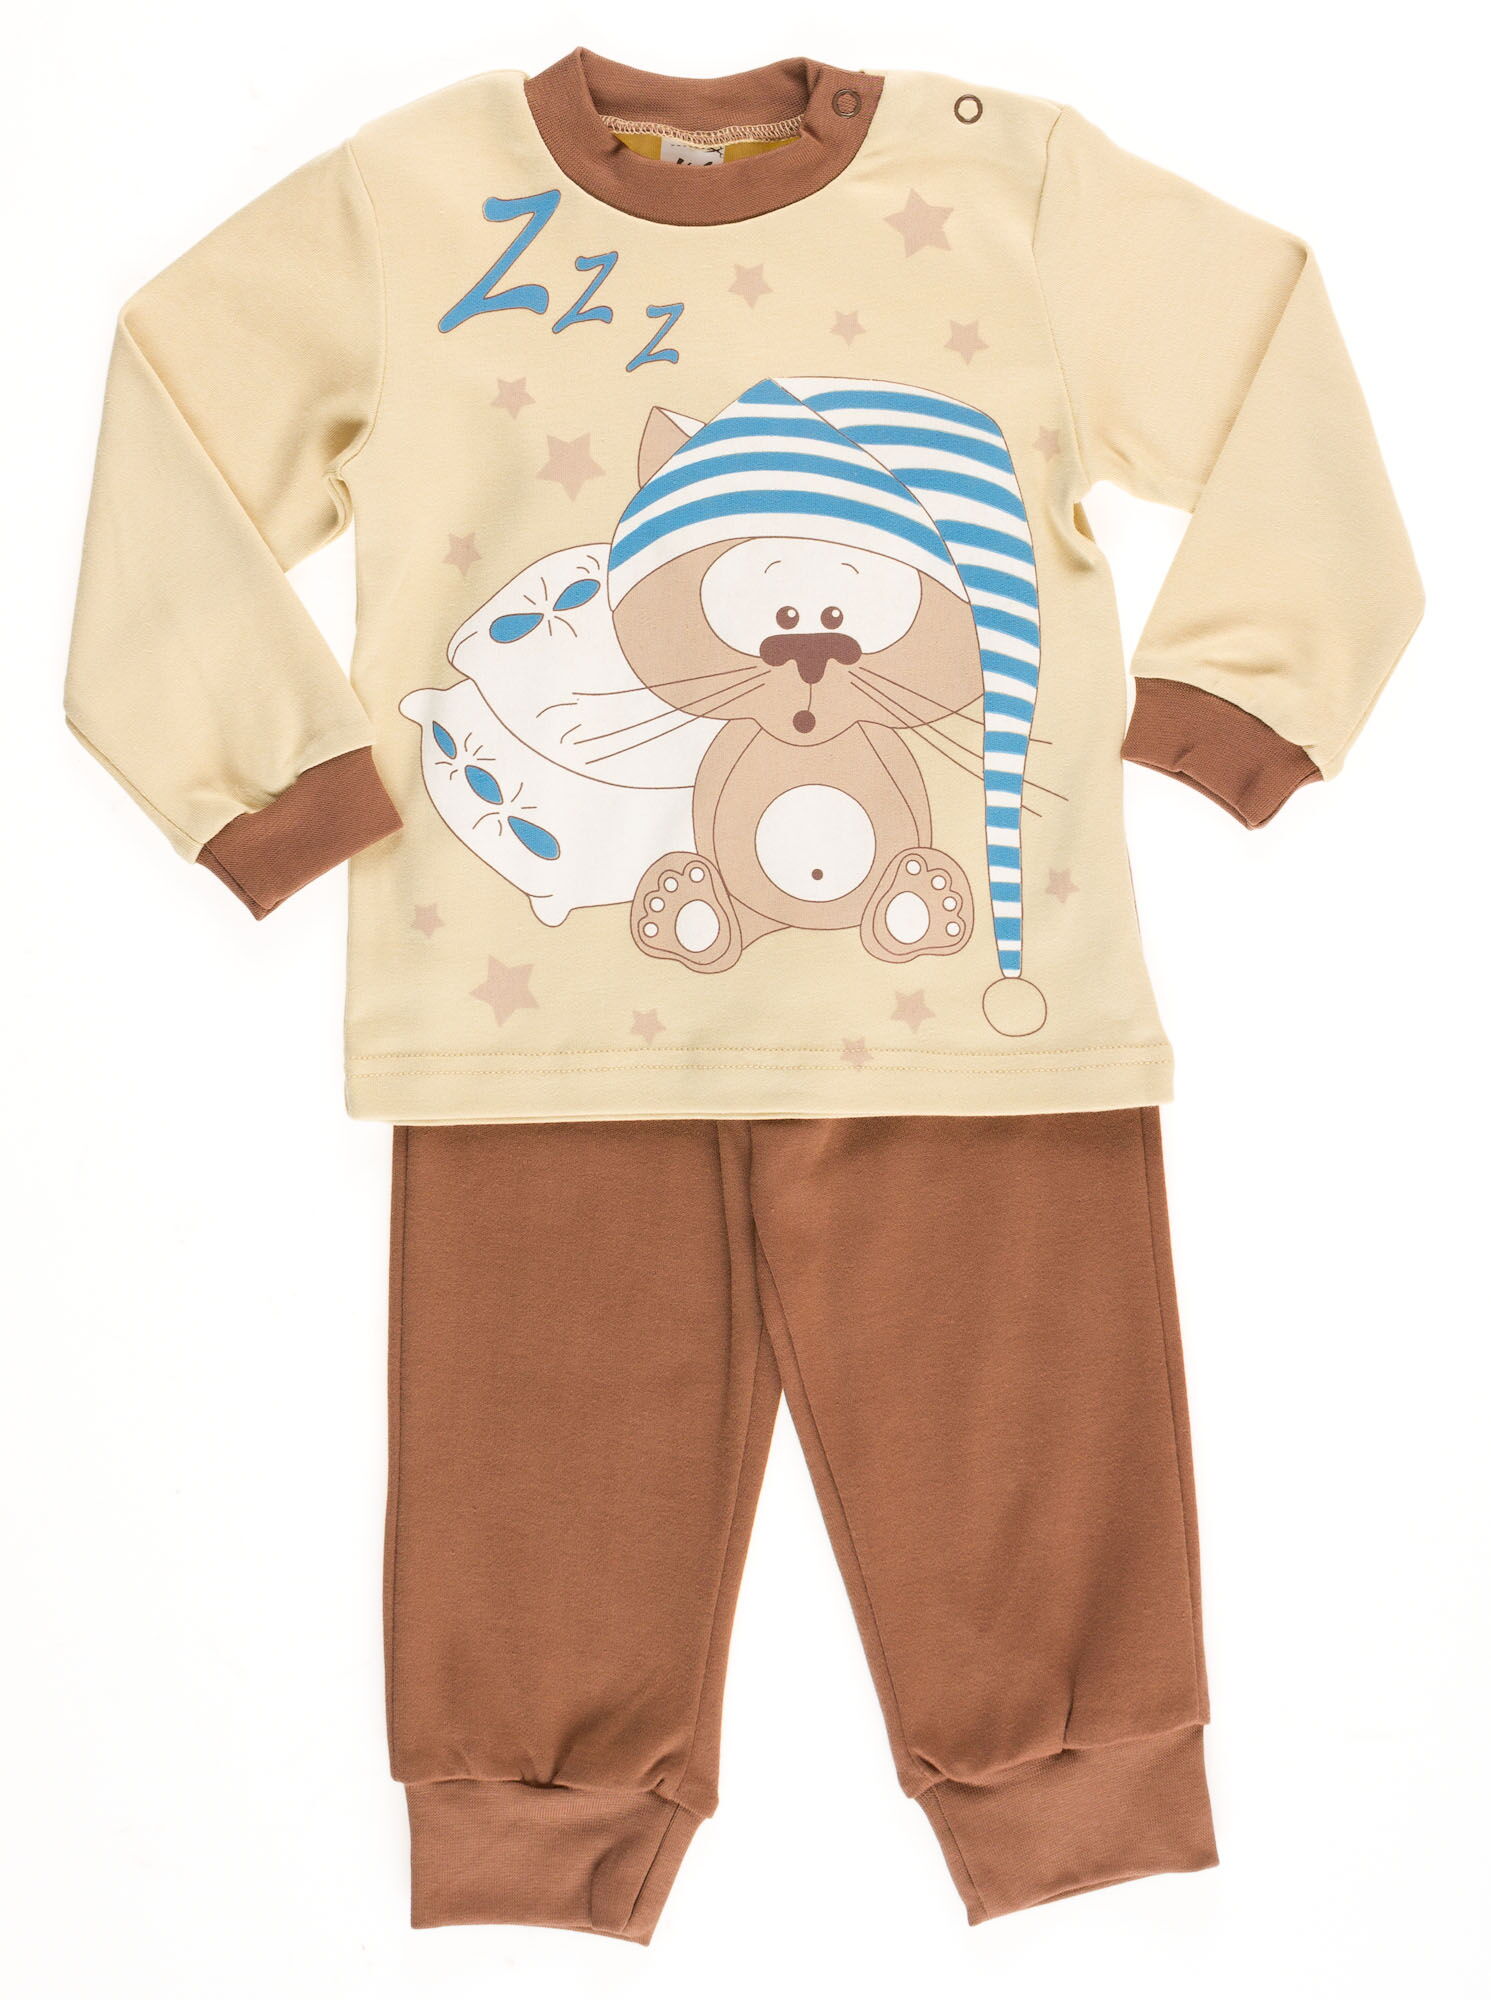 Пижама  для мальчика Valeri tex Кот коричневая 1782-55-090 - цена